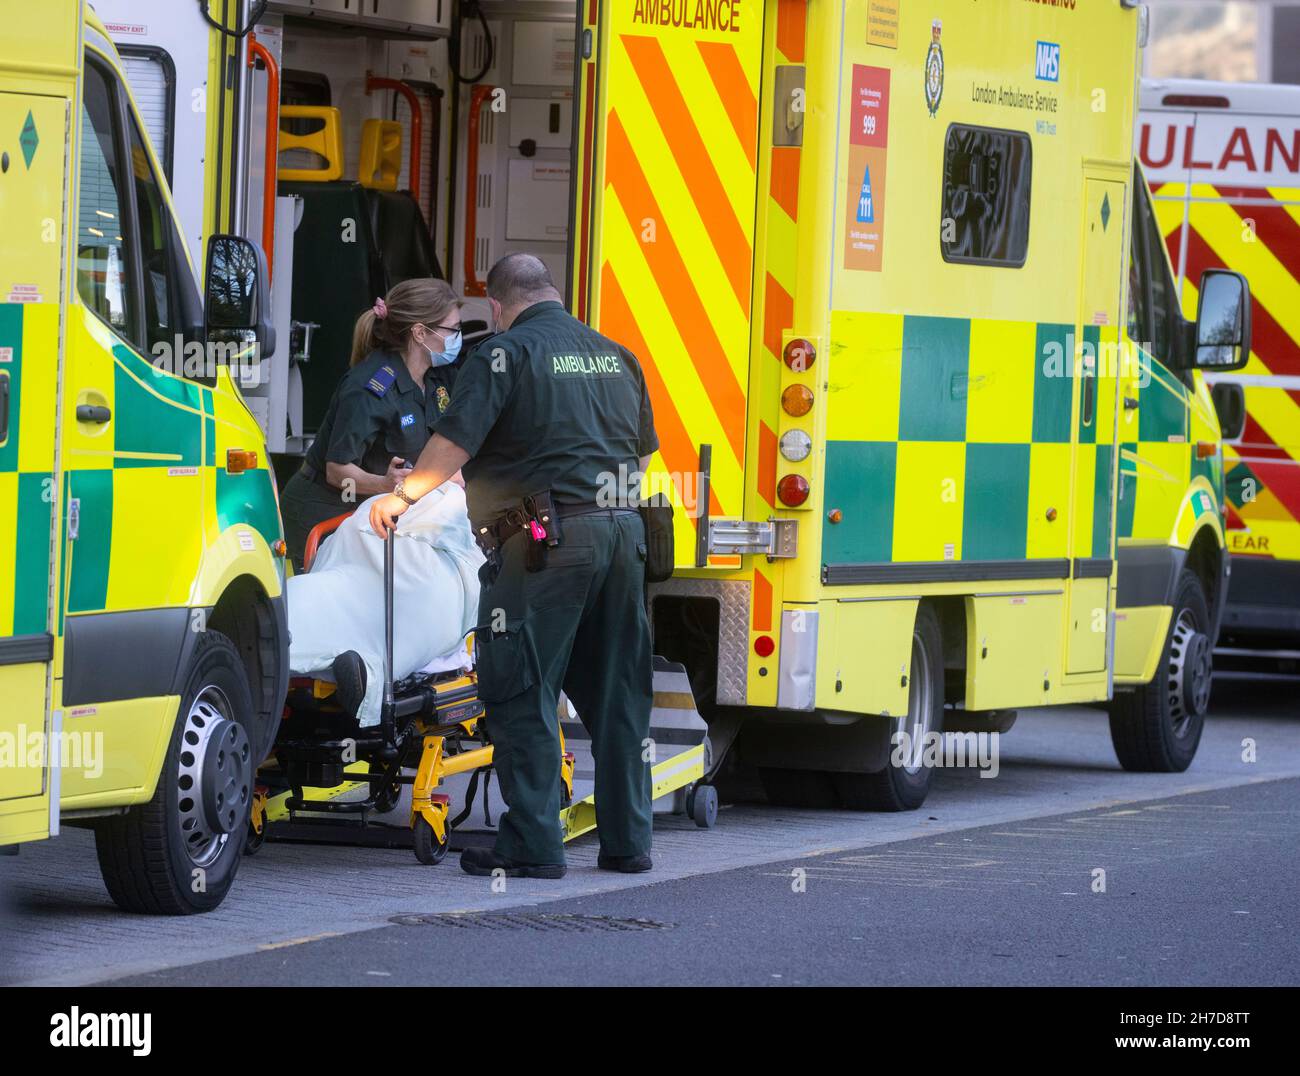 Londra, Regno Unito. 22 novembre 2021. Ambulanze al di fuori del Royal London Hospital di Whitechapel. L'NHS è sotto pressione estrema poiché vi è un backlog di pazienti. Credit: Mark Thomas/Alamy Live News Foto Stock